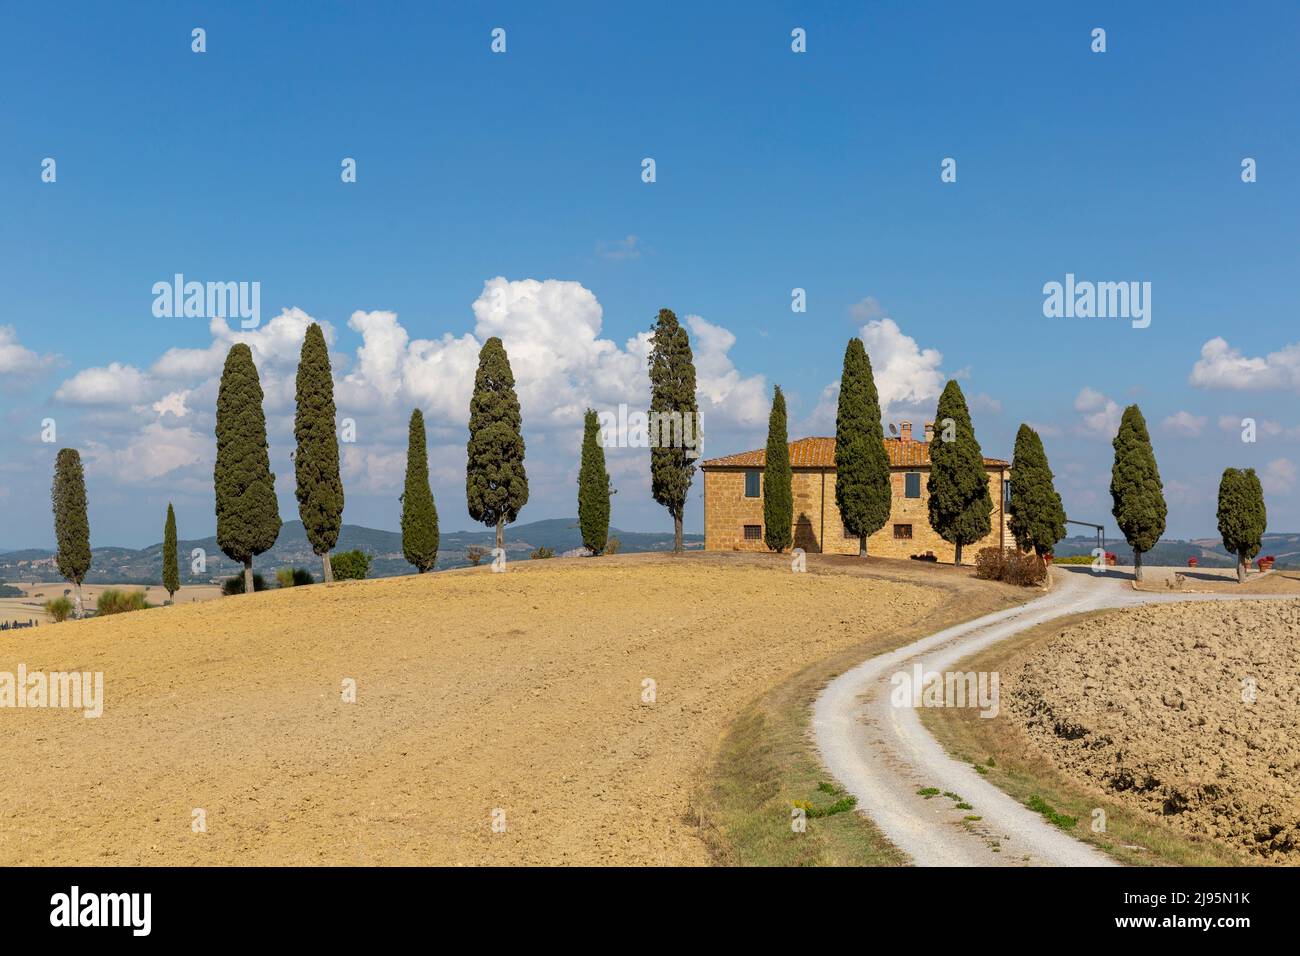 Paysage typique de la toscane : une route, des cyprès et une villa Banque D'Images